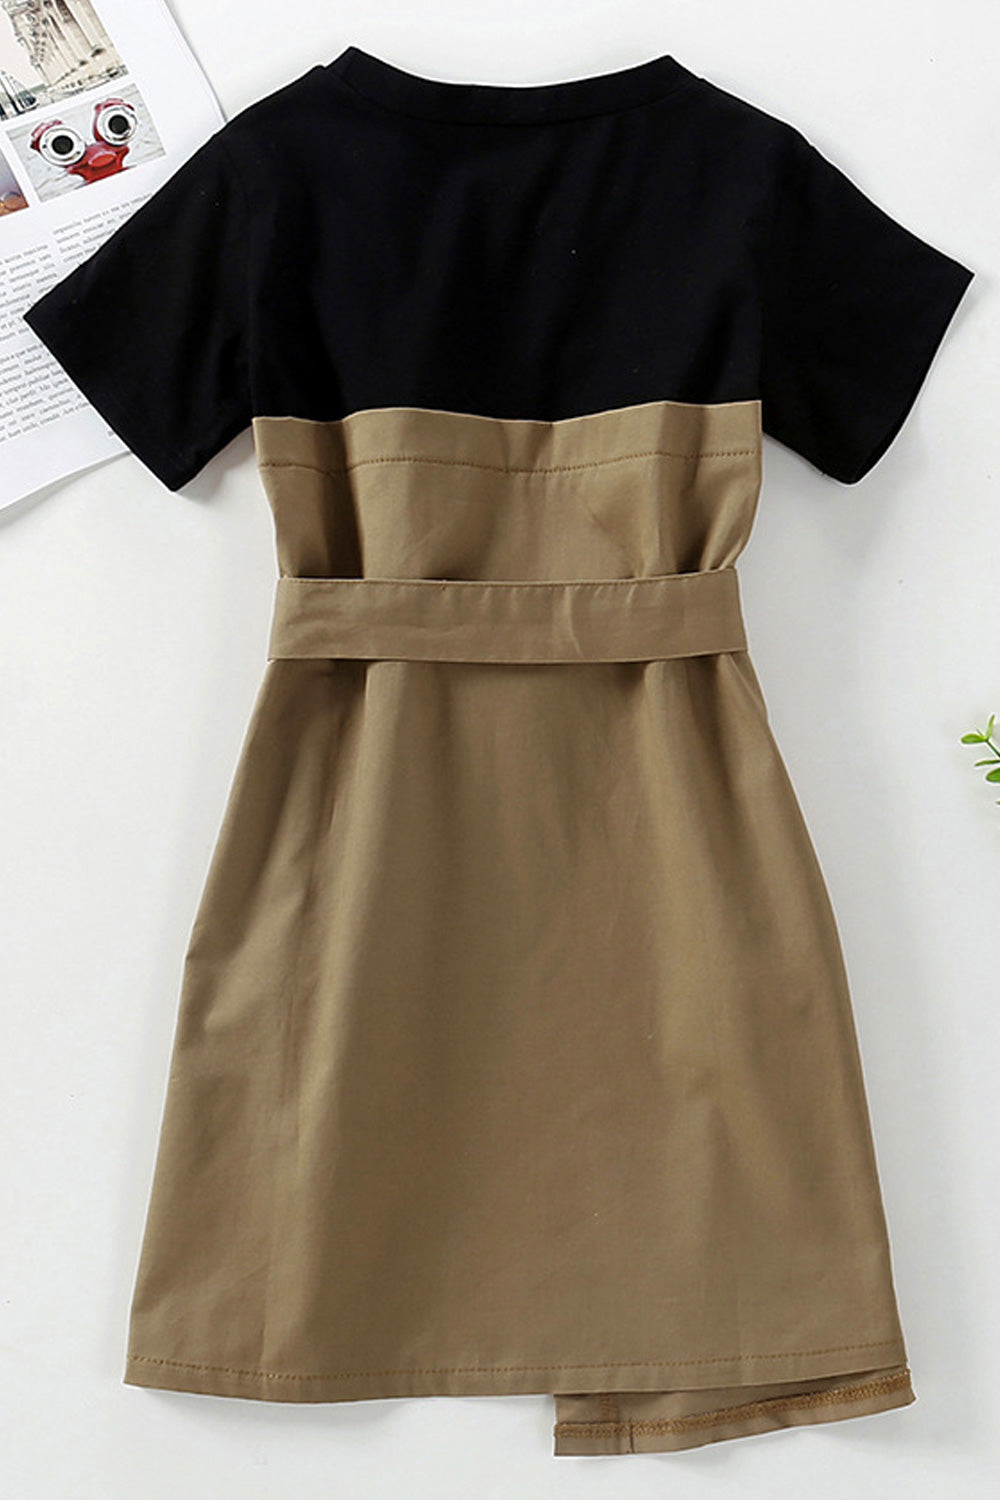 Kids Girls Short Sleeve Button Closure Solid Pattern Dress - KGD100452